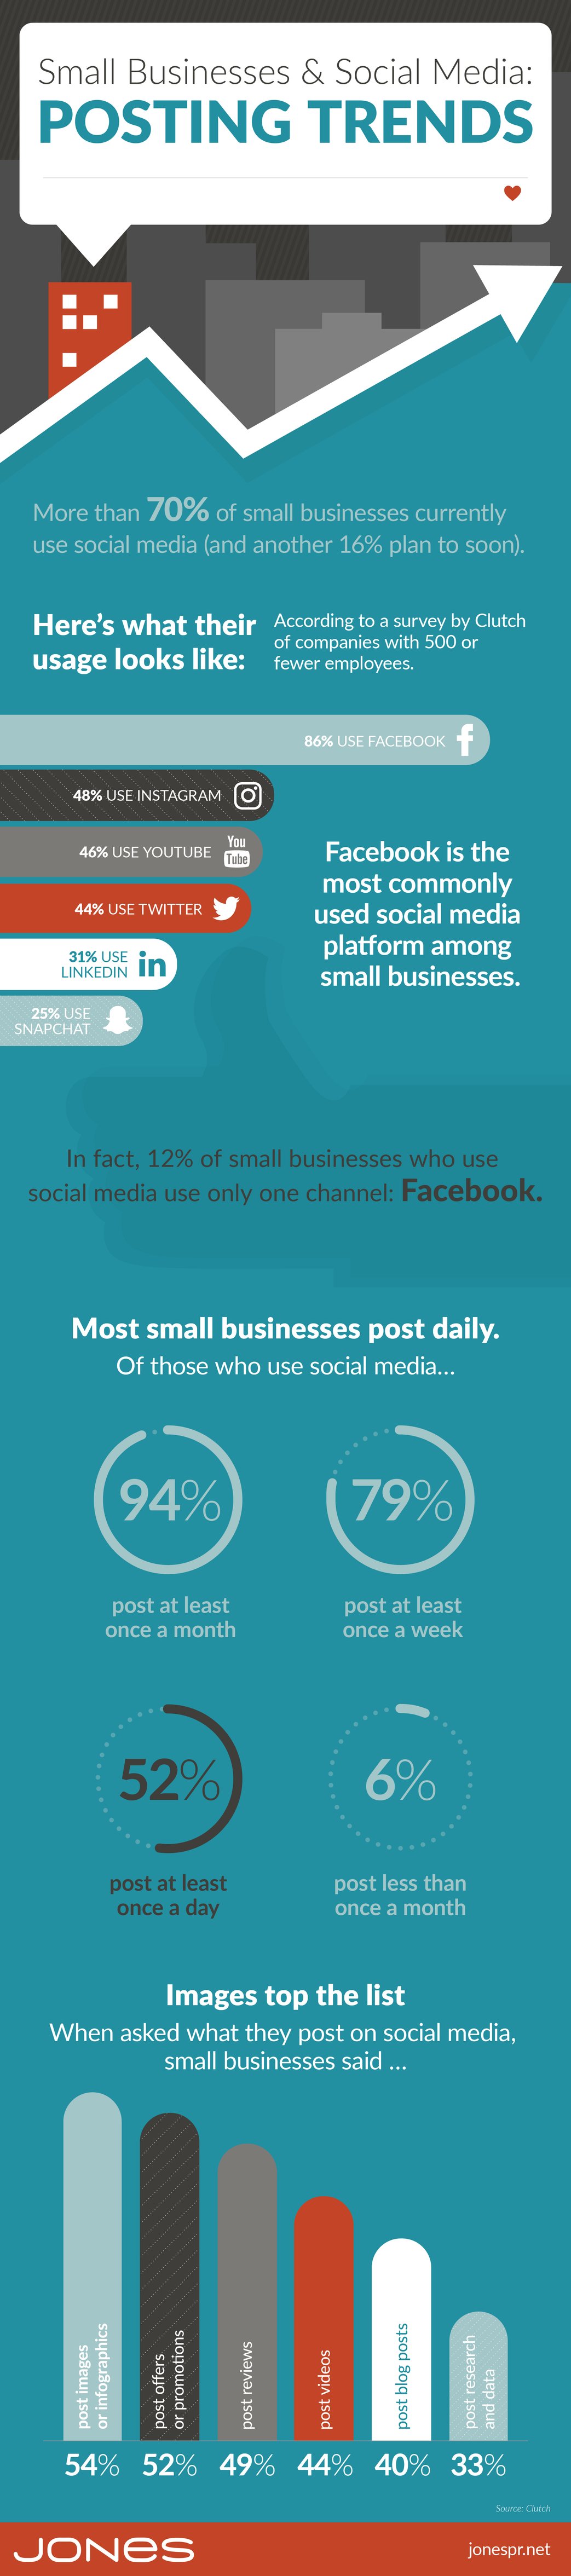 jones-infographic-small-biz-social-media-posting-trends-v2-01 copy